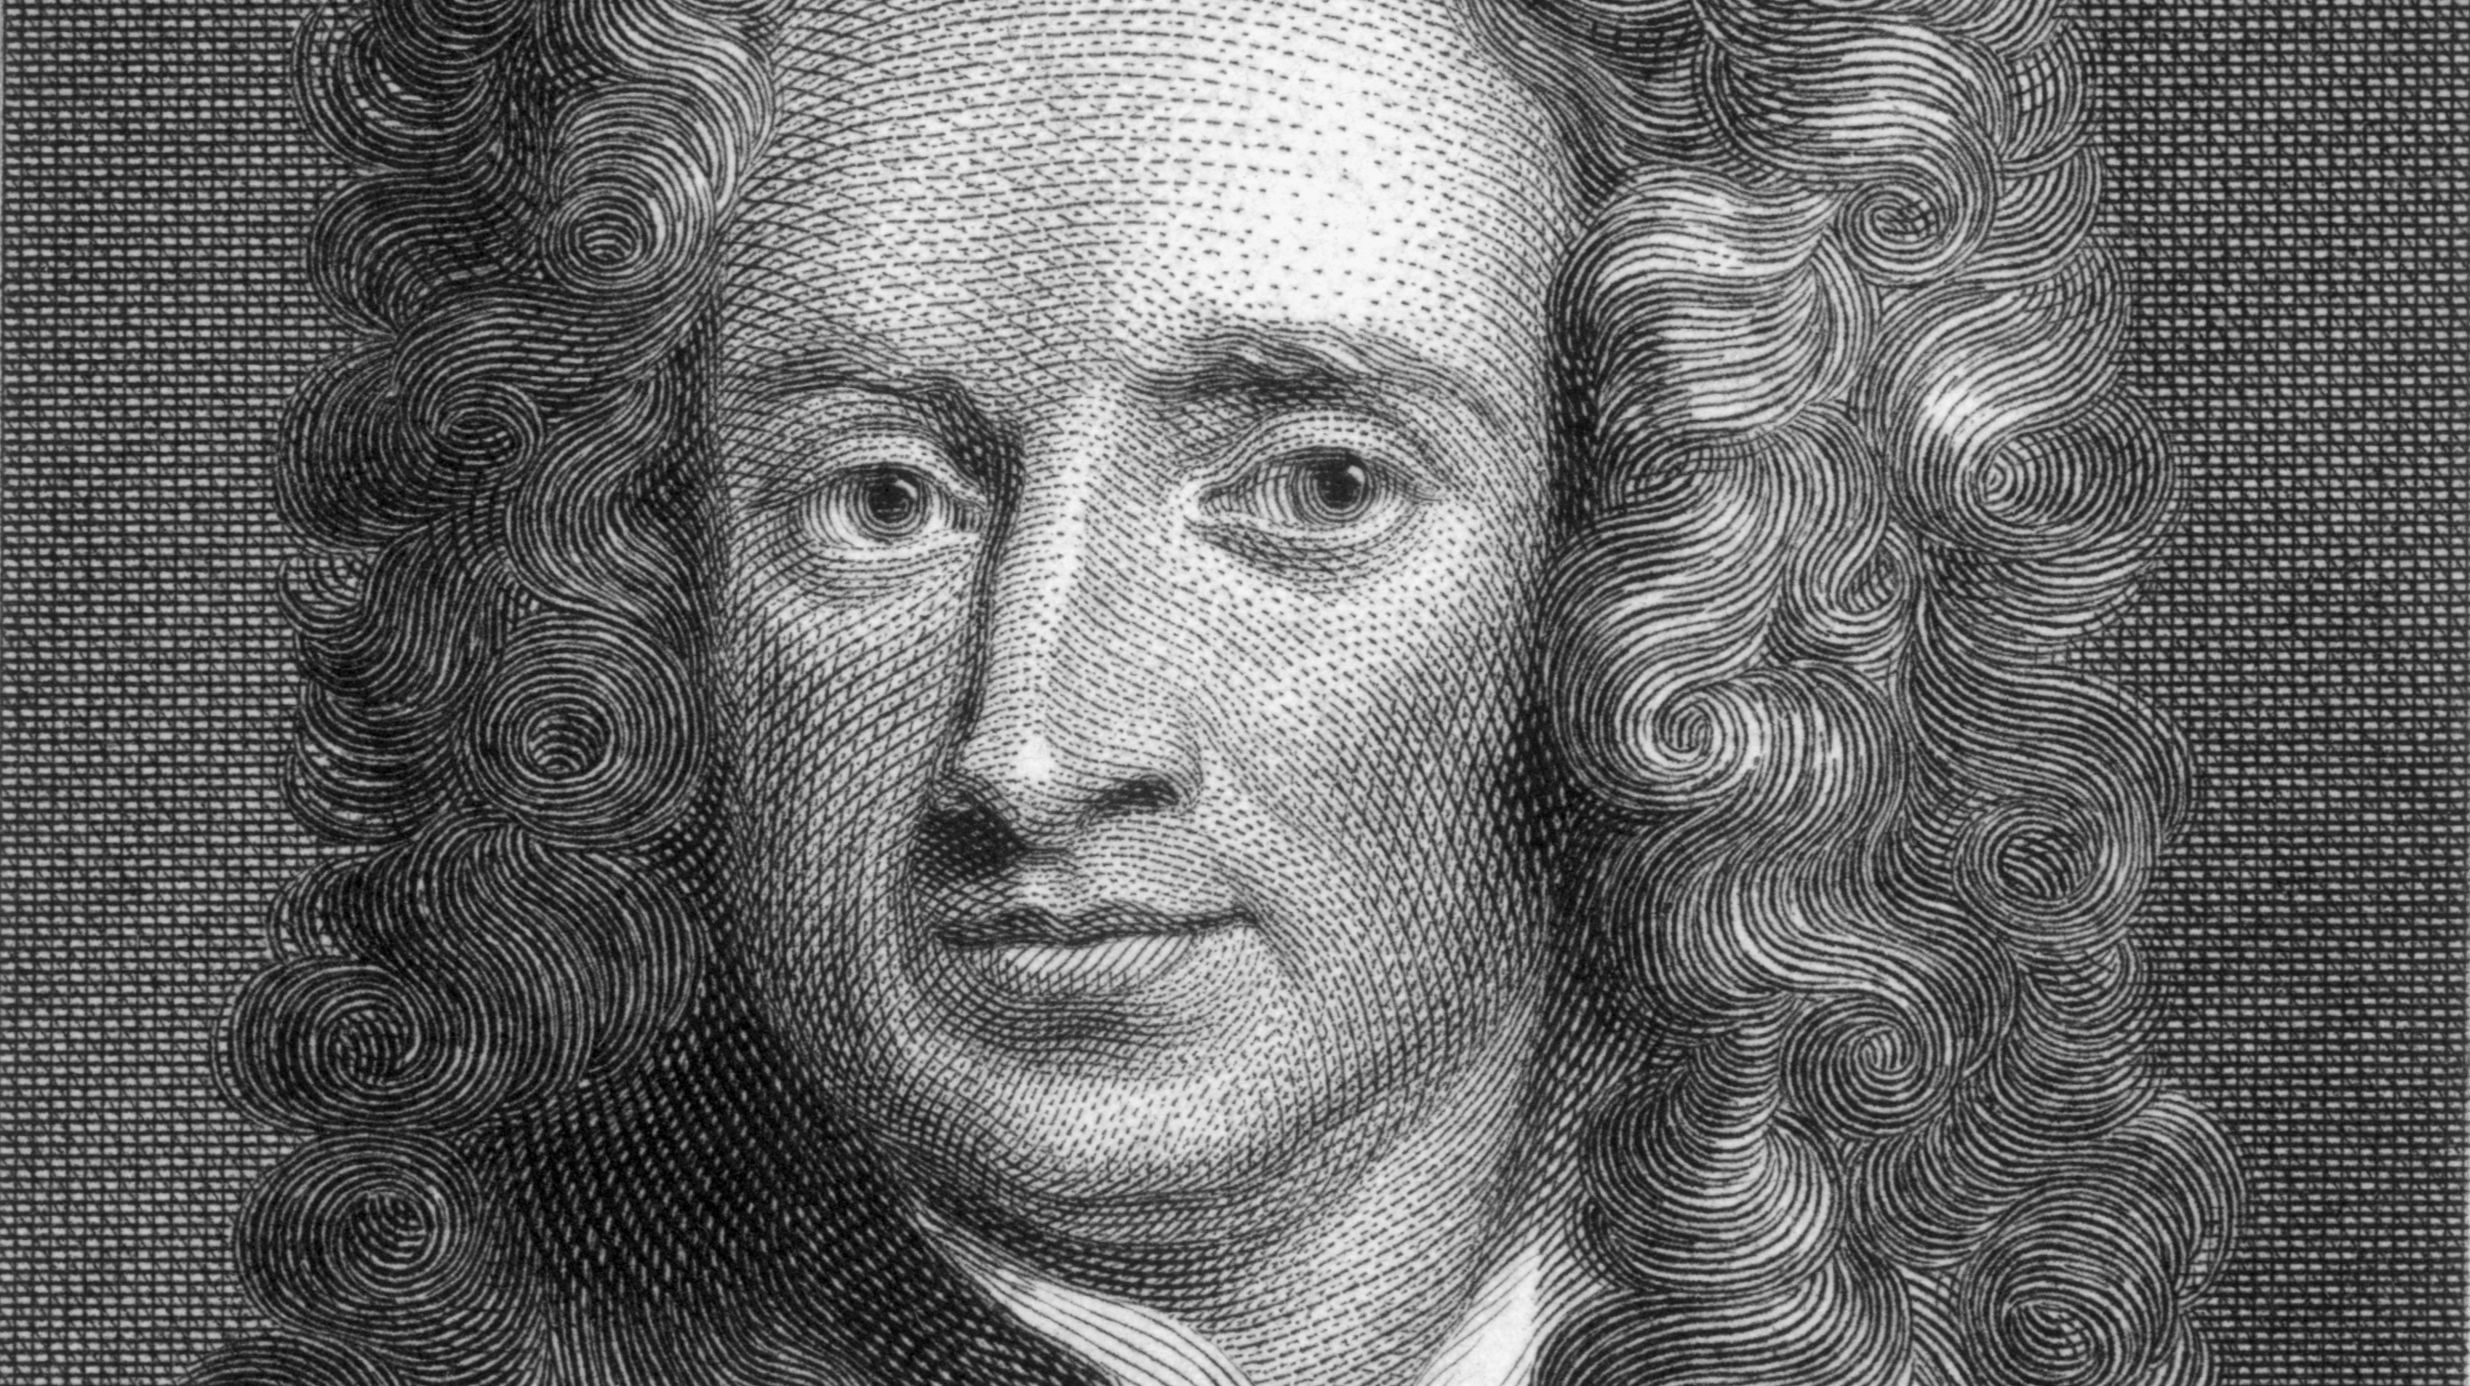 Isaac Newton Hooliassets 4528